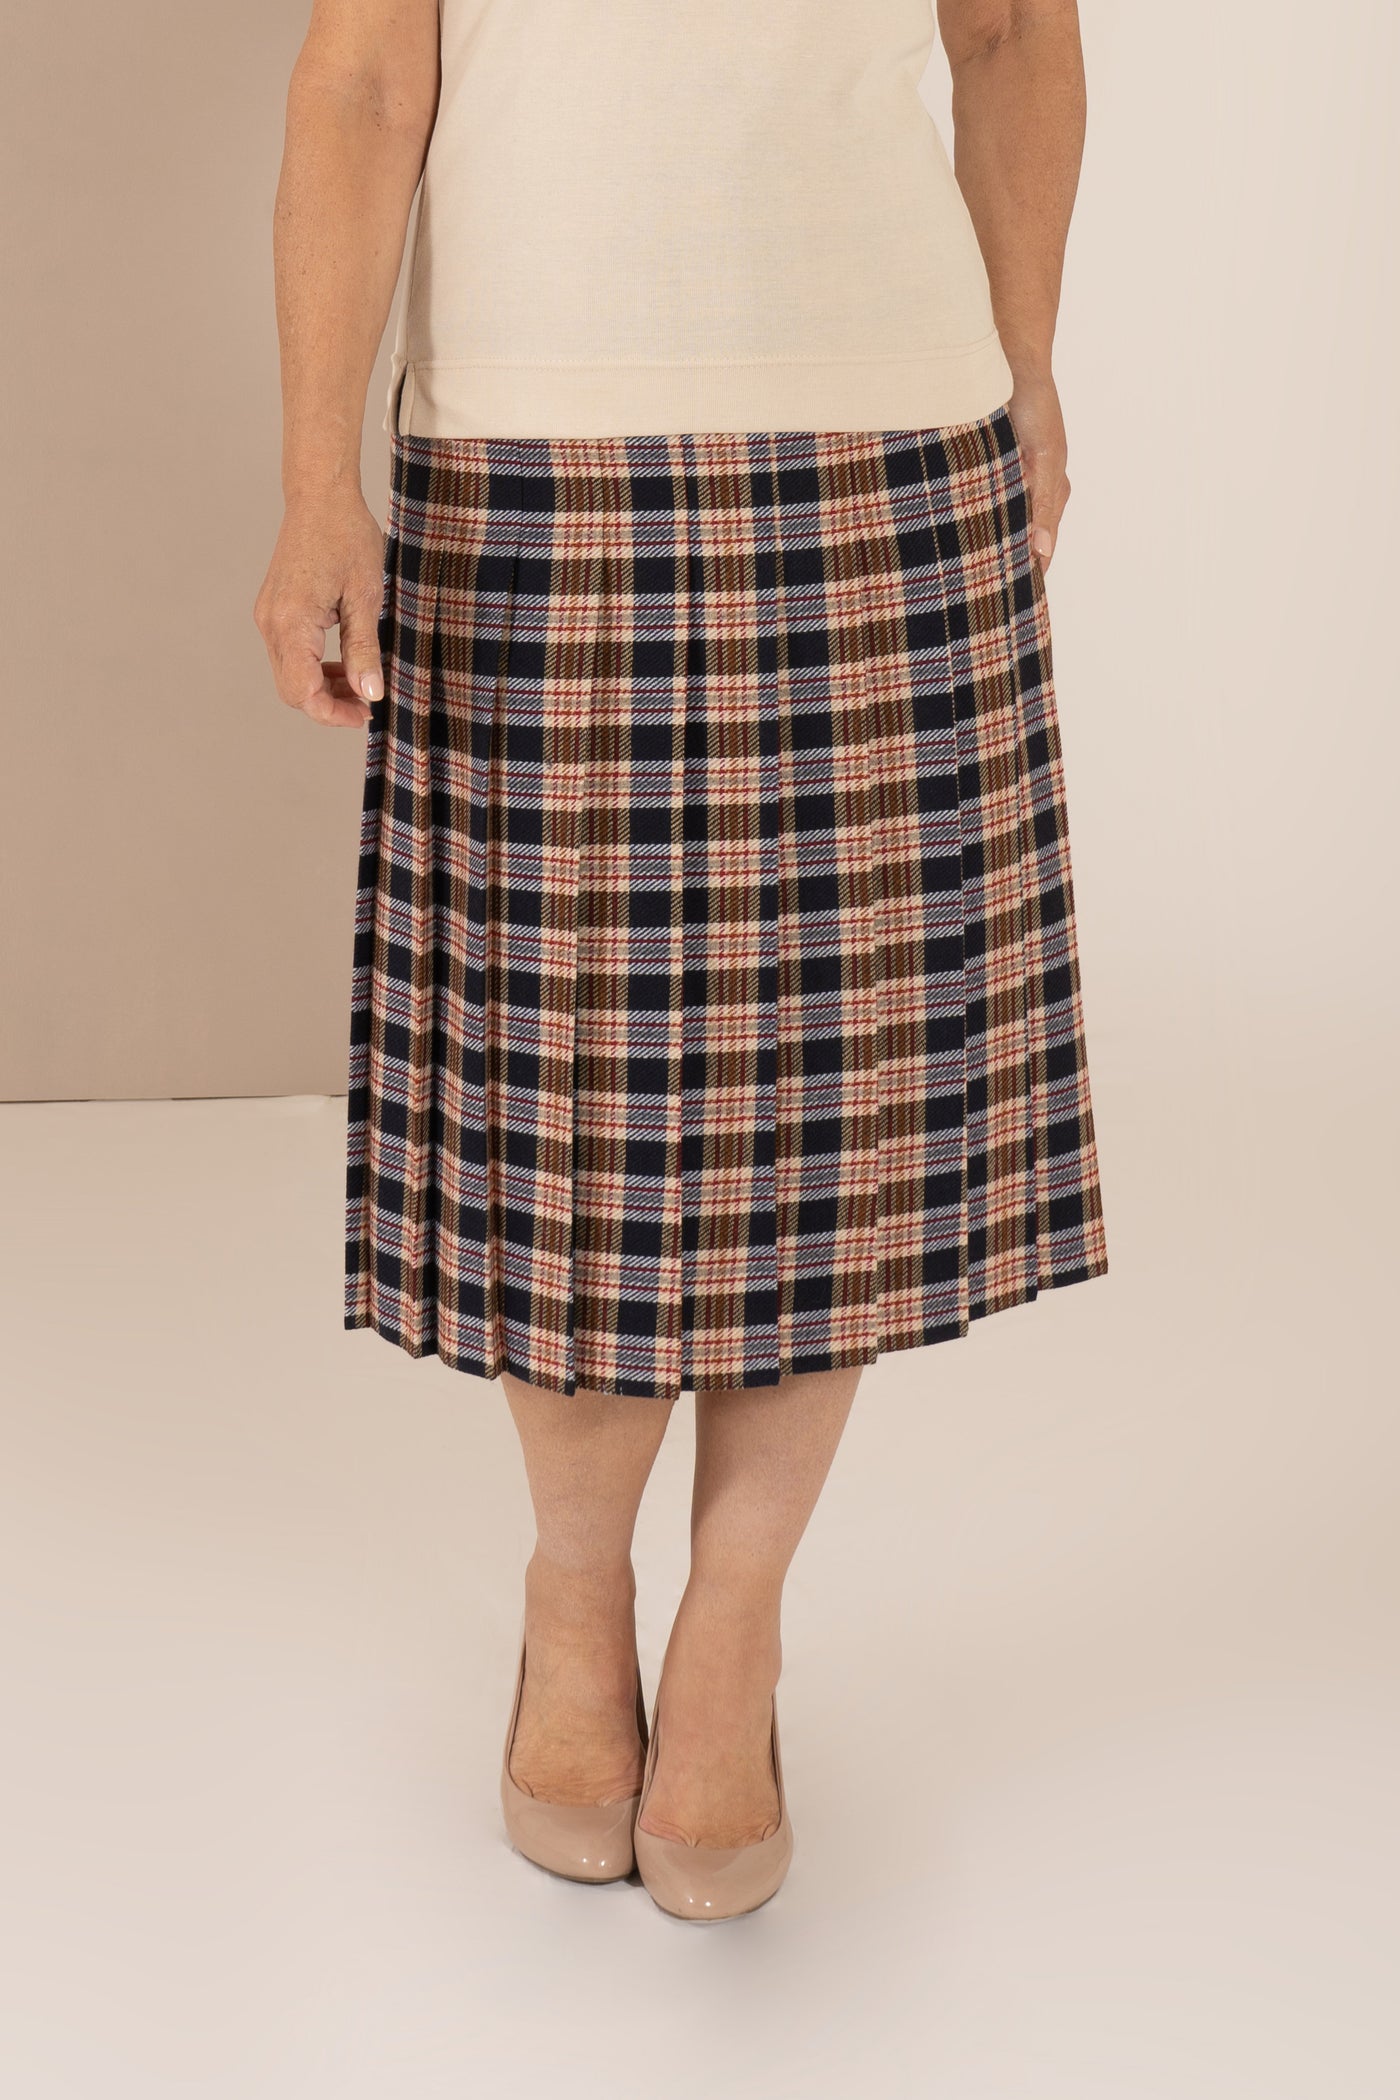 Bonnie Skirt